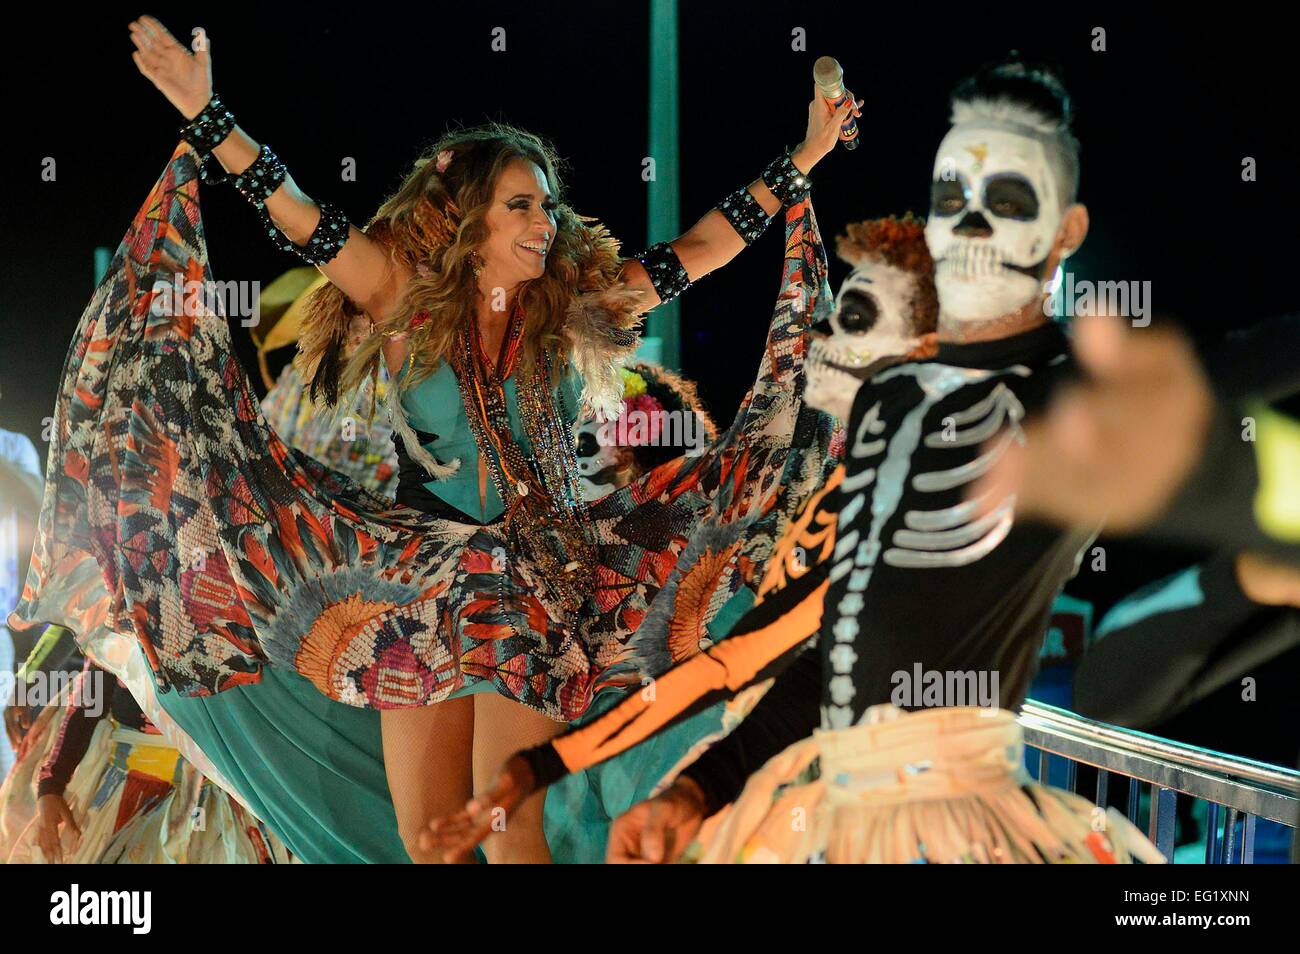 Rio De Janeiro, Brazil. 13th Feb, 2015. Singer Daniela Mercury takes part in the Carnival parade in Salvador, Bahia state, Brazil, on Feb. 13, 2015. © Inacio Teixeira/Coperphoto/Estadao Conteudo/AGENCIA ESTADO/Xinhua/Alamy Live News Stock Photo